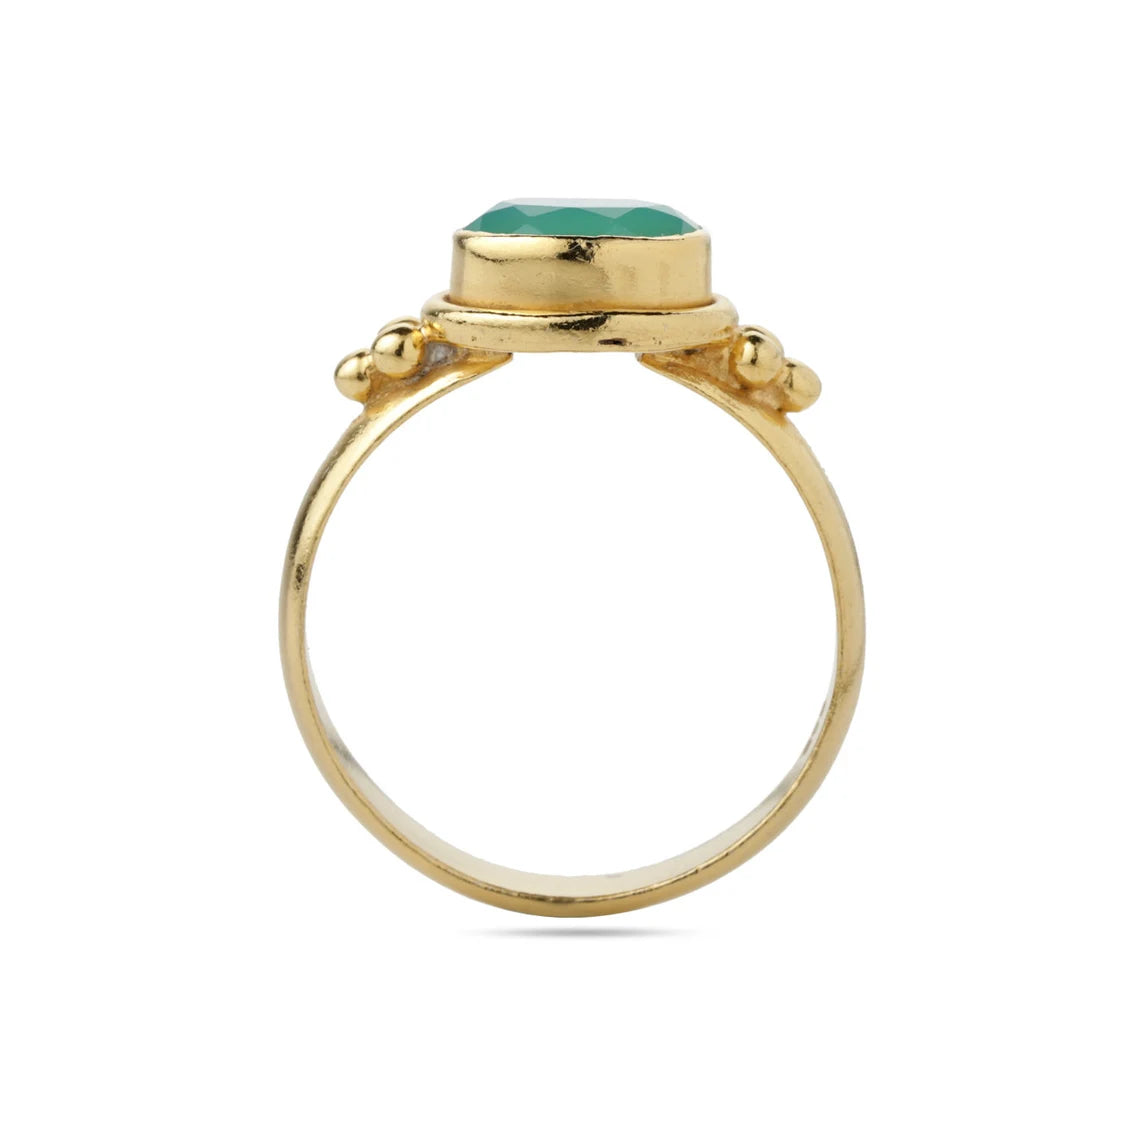 Chrysoprase Onyx Ring - Chryso Onyx Gold Ring - Oval Ring - Chryso Onyx Gemstone Ring, Statement Ring, Birthstone Ring